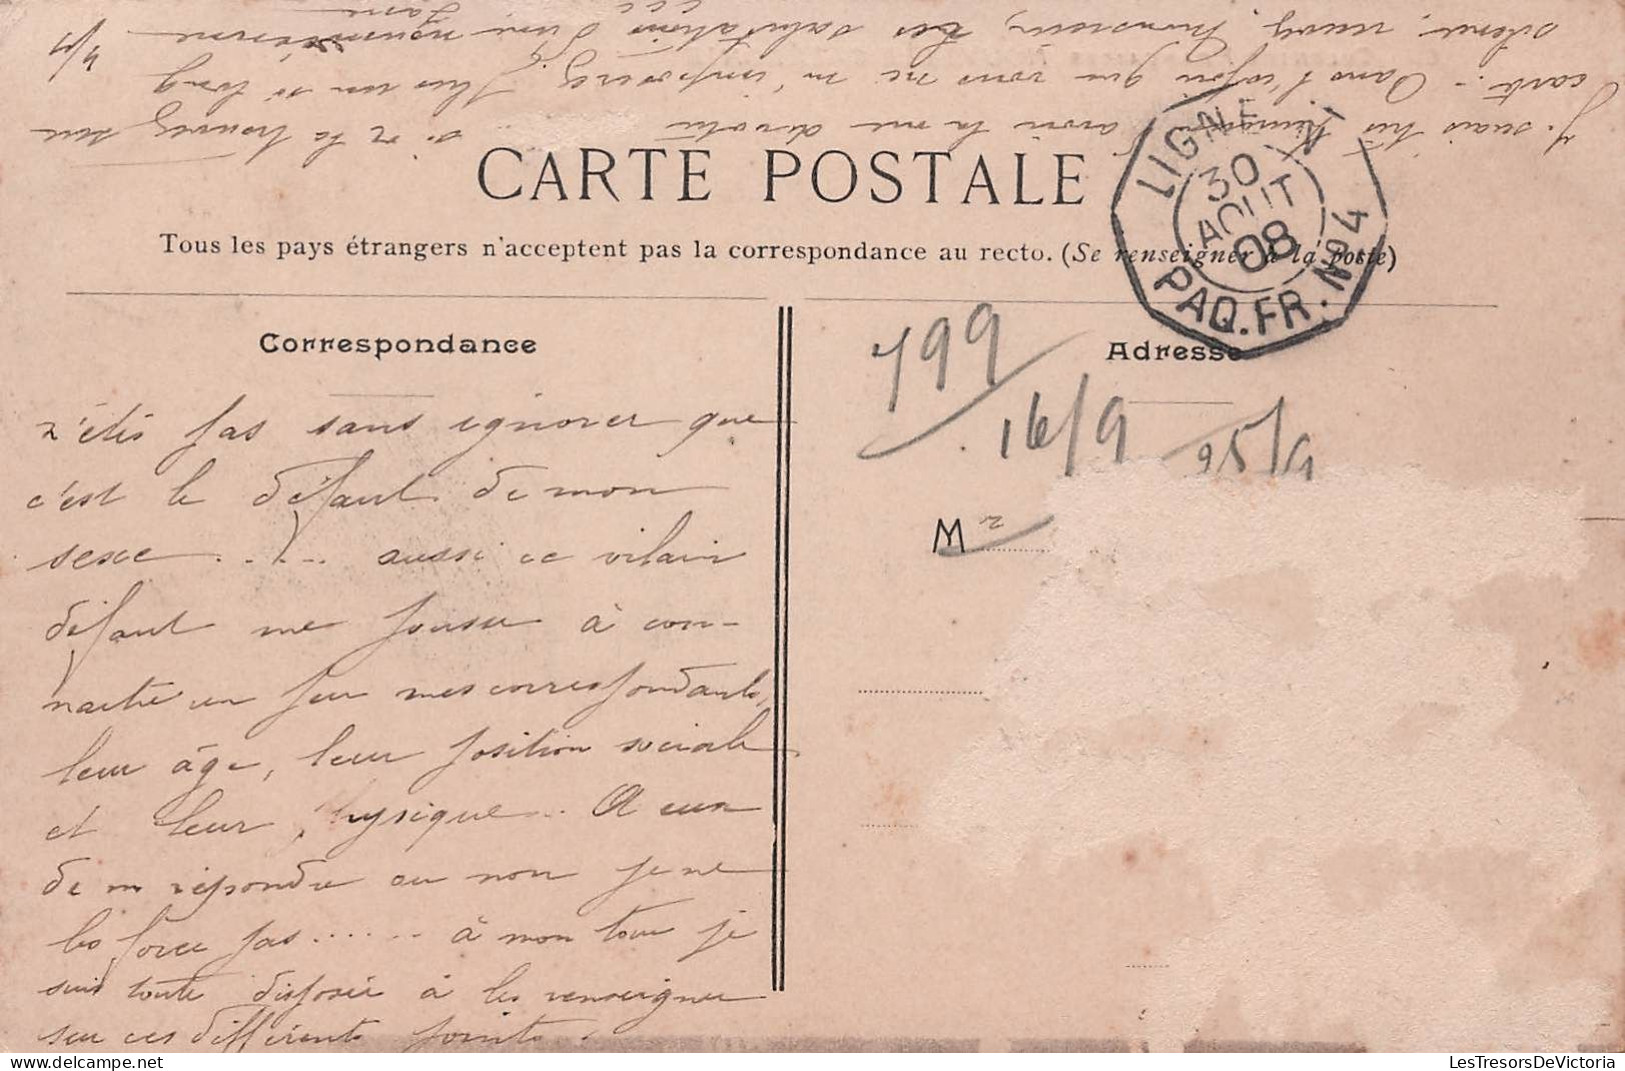 Nouvelle Caledonie - Canaques - Obliteration Paquebot N°4 1908 - Carte Postale Ancienne - Neukaledonien